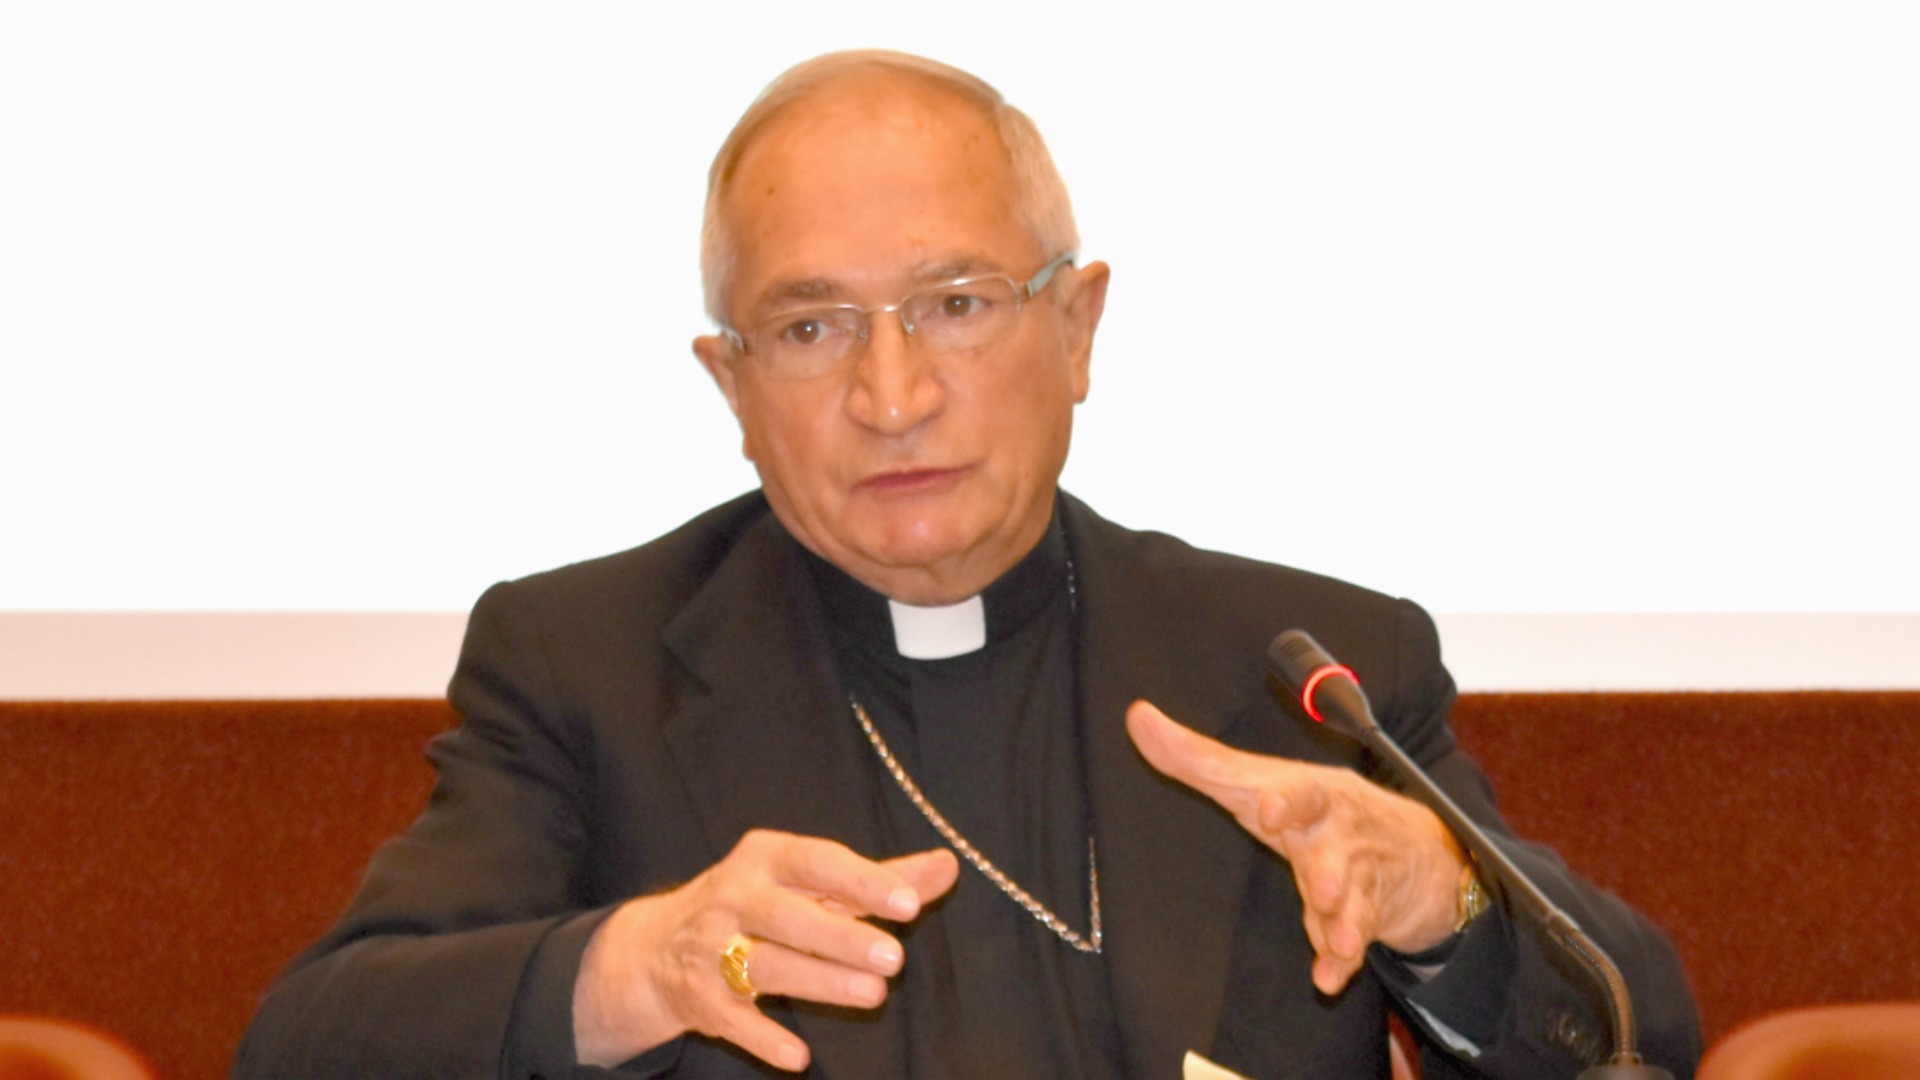 L'archevêque Silvano Tomasi, ancien observateur permanent du Saint-Siège auprès de l'ONU (Photo: Jacques Berset)